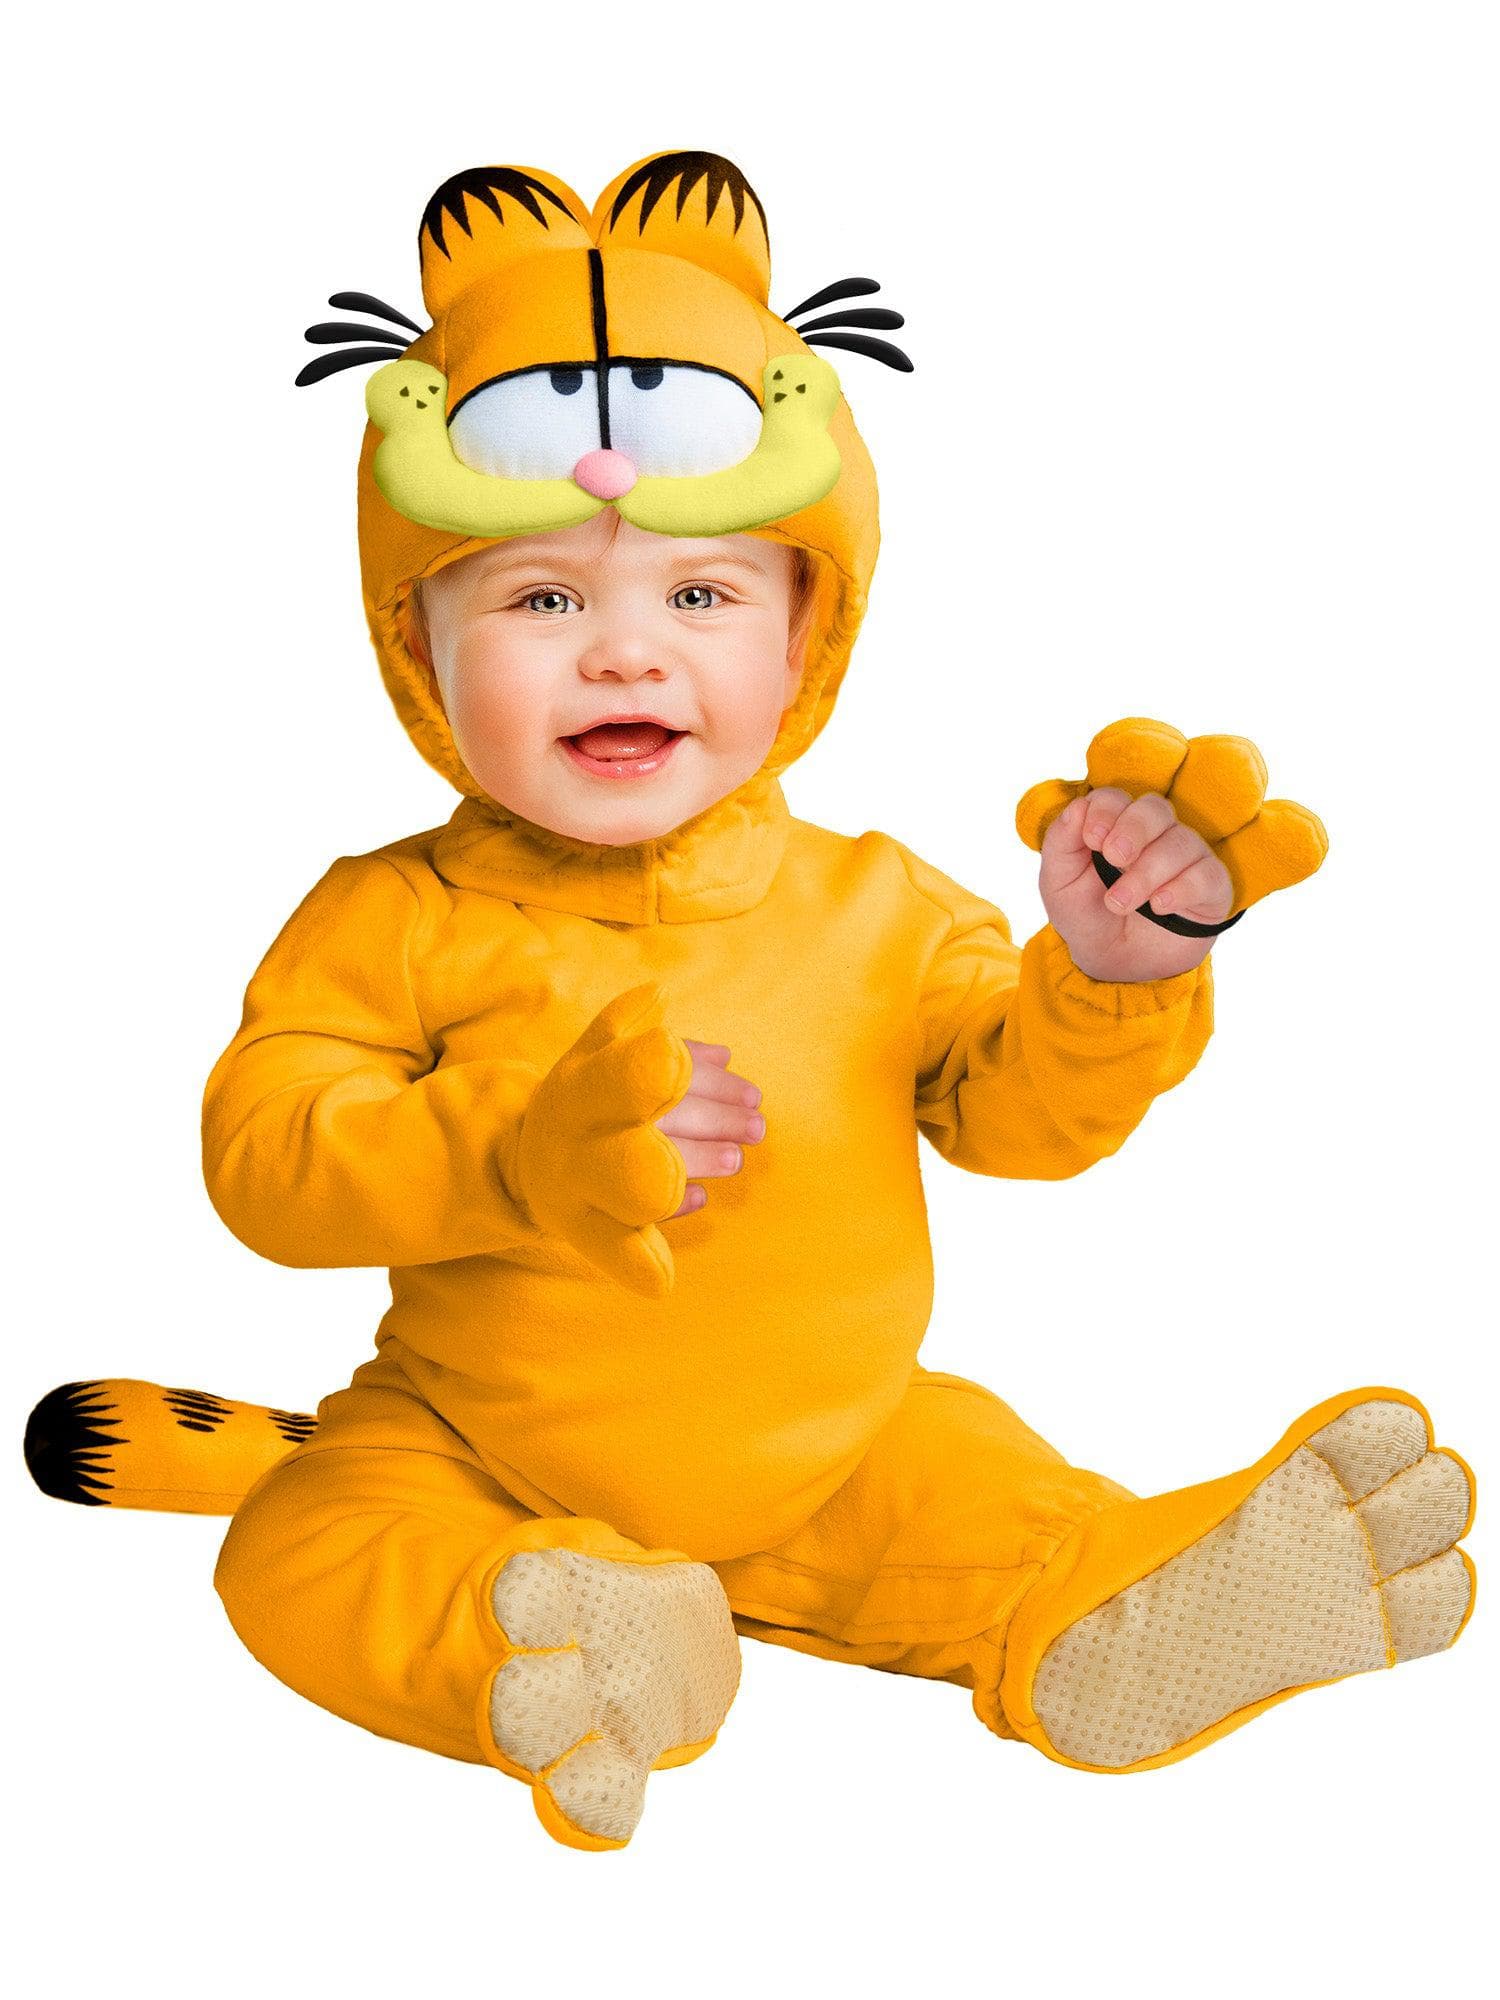 Garfield Baby Costume - costumes.com